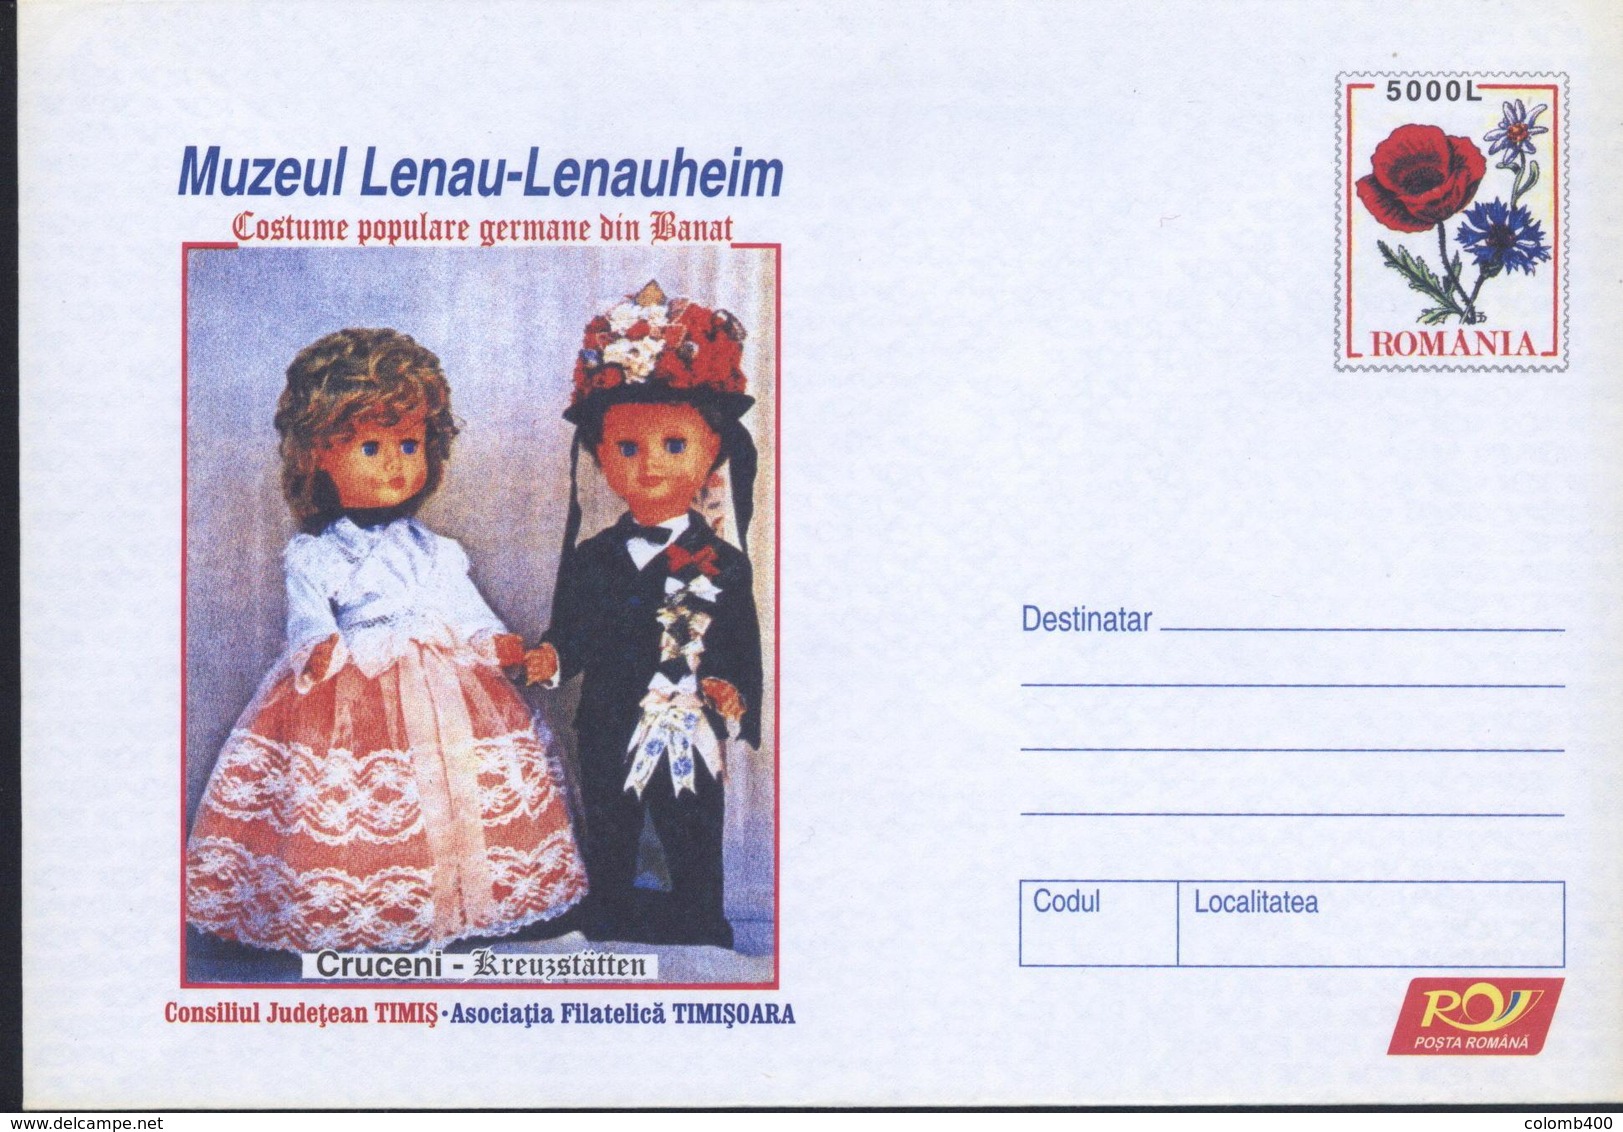 Poupees En Costume Traditionnel,Pavot / Papaver,Edelweiss  Entier Postal - Roumanie / Romania 2005 - Dolls